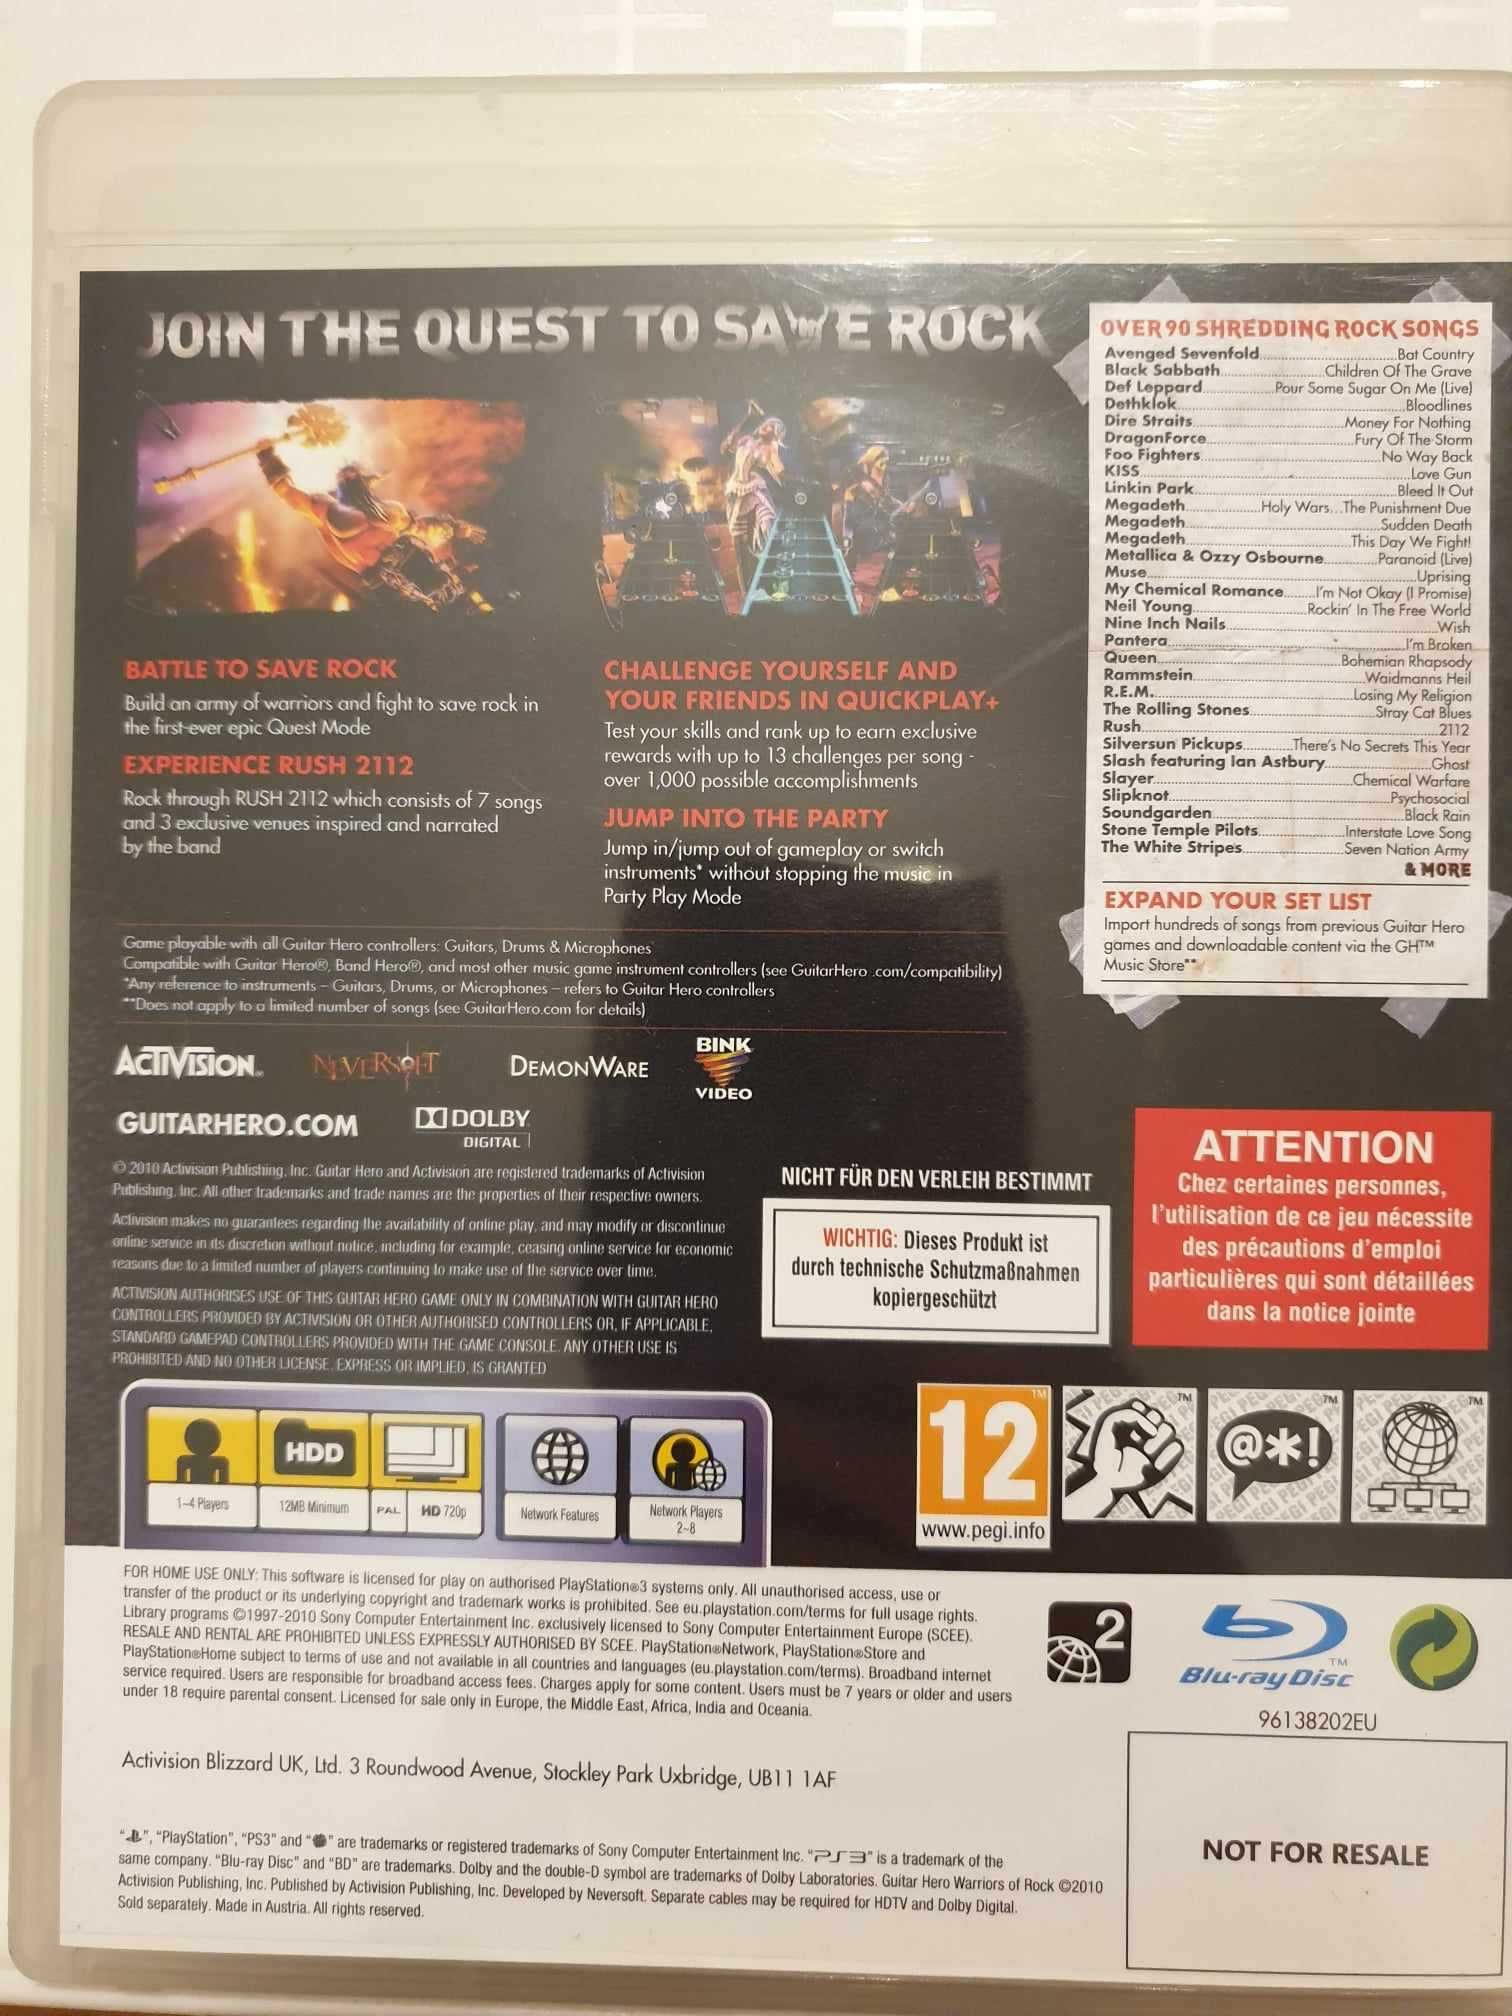 Guitar Hero Warriors of Rock PS3